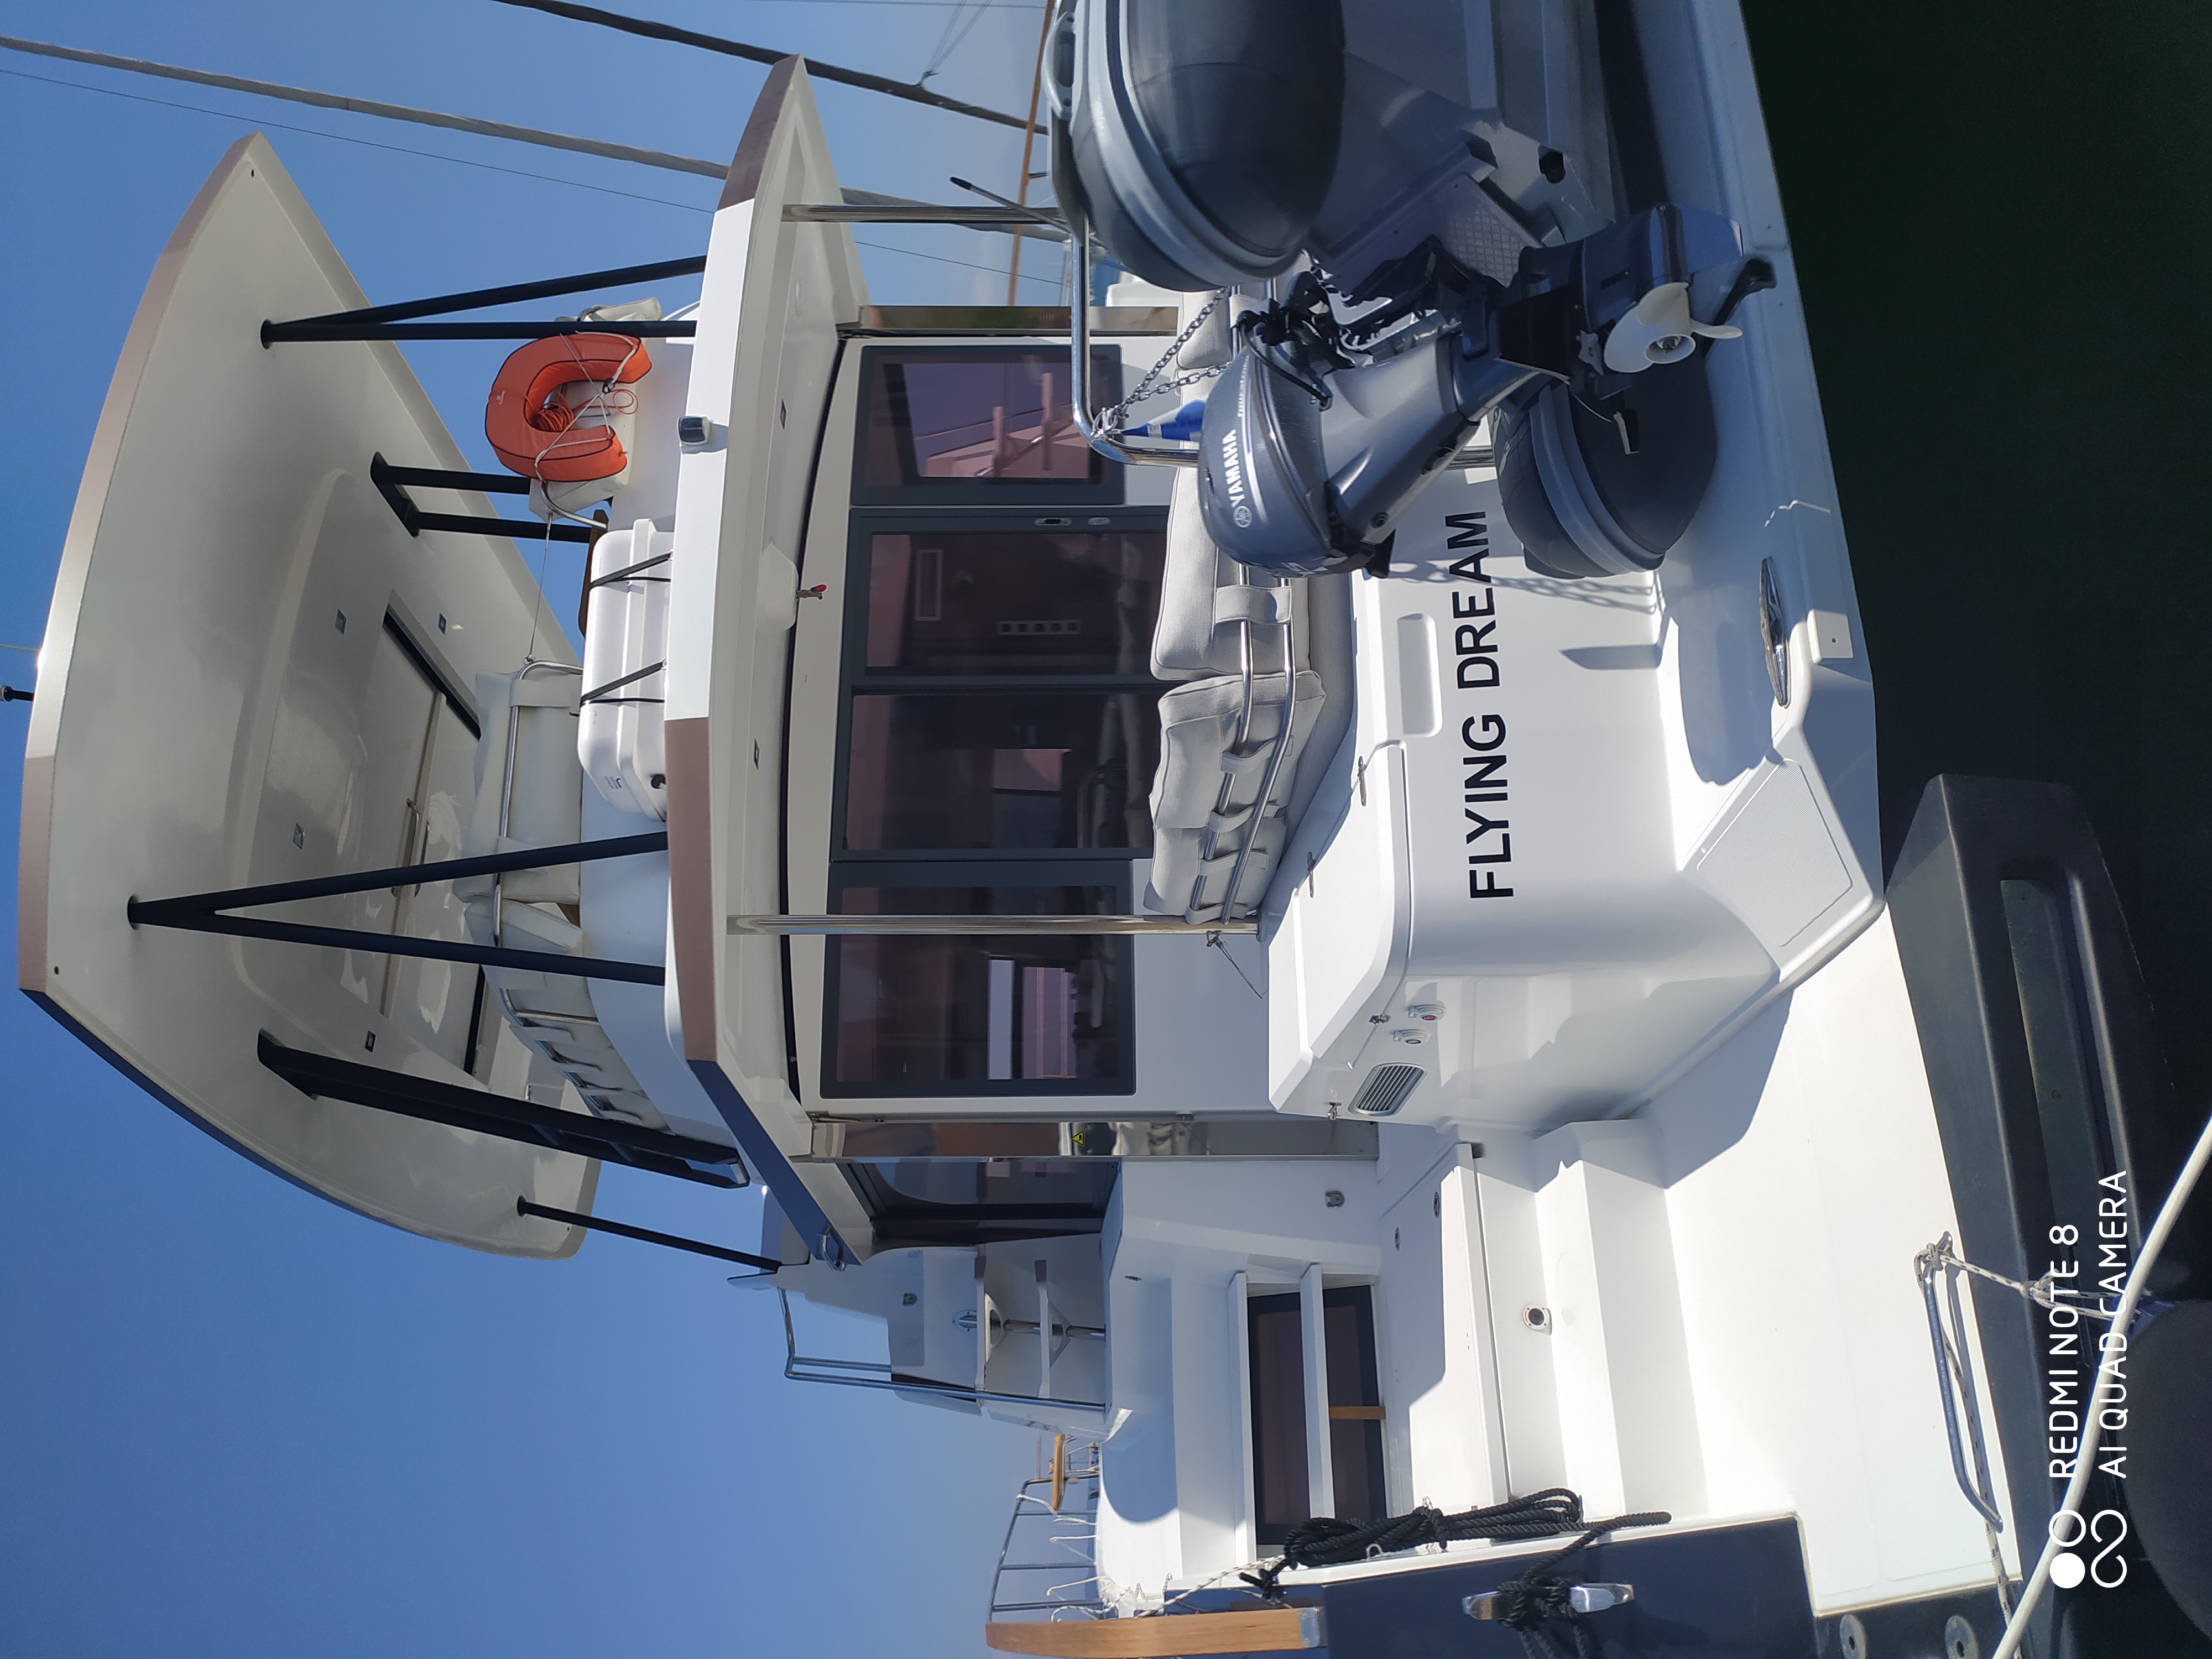 Bali 4.3 MY - Yacht Charter Zakynthos & Boat hire in Greece Ionian Sea South Ionian Zakynthos Zakynthos 2